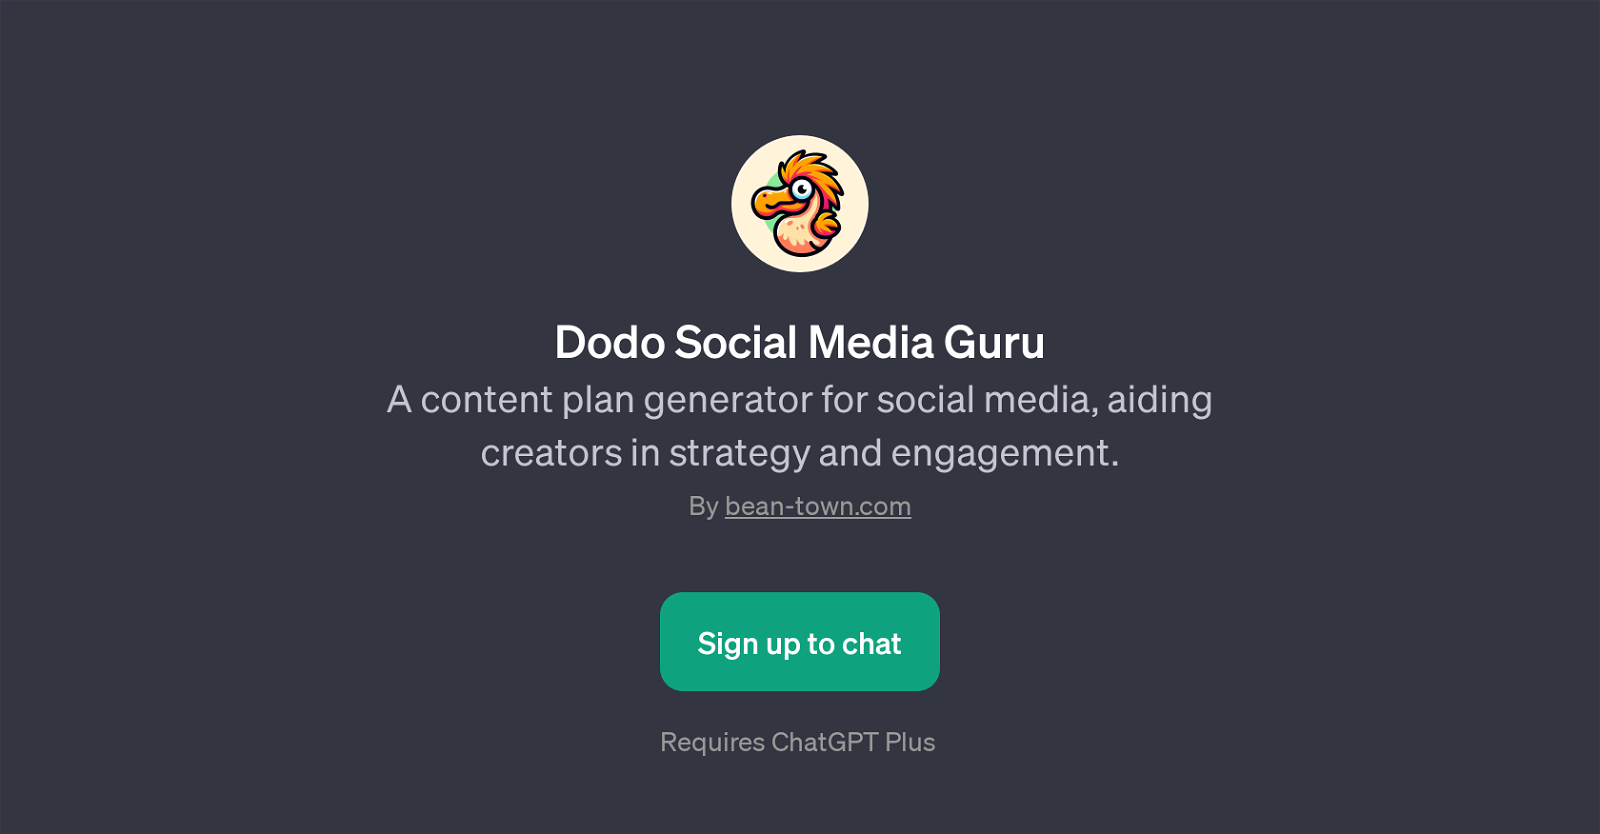 Dodo Social Media Guru website